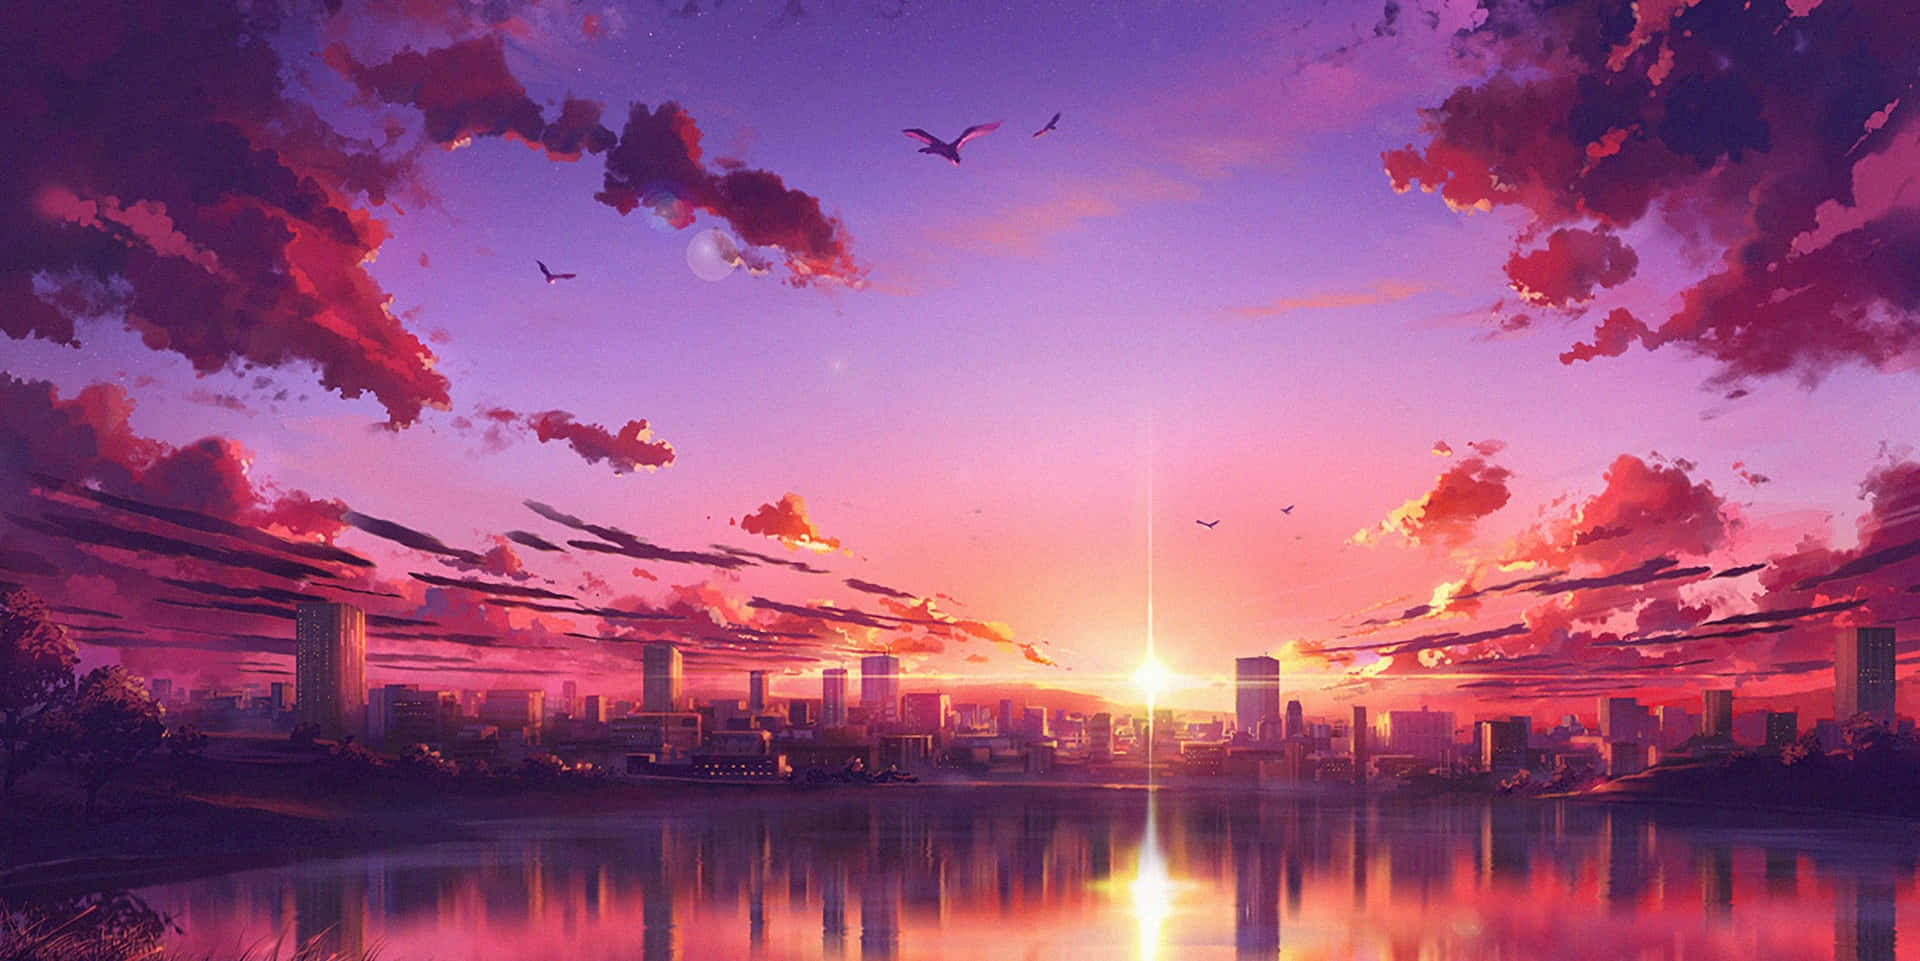 Captivating Anime Sunset Scenery